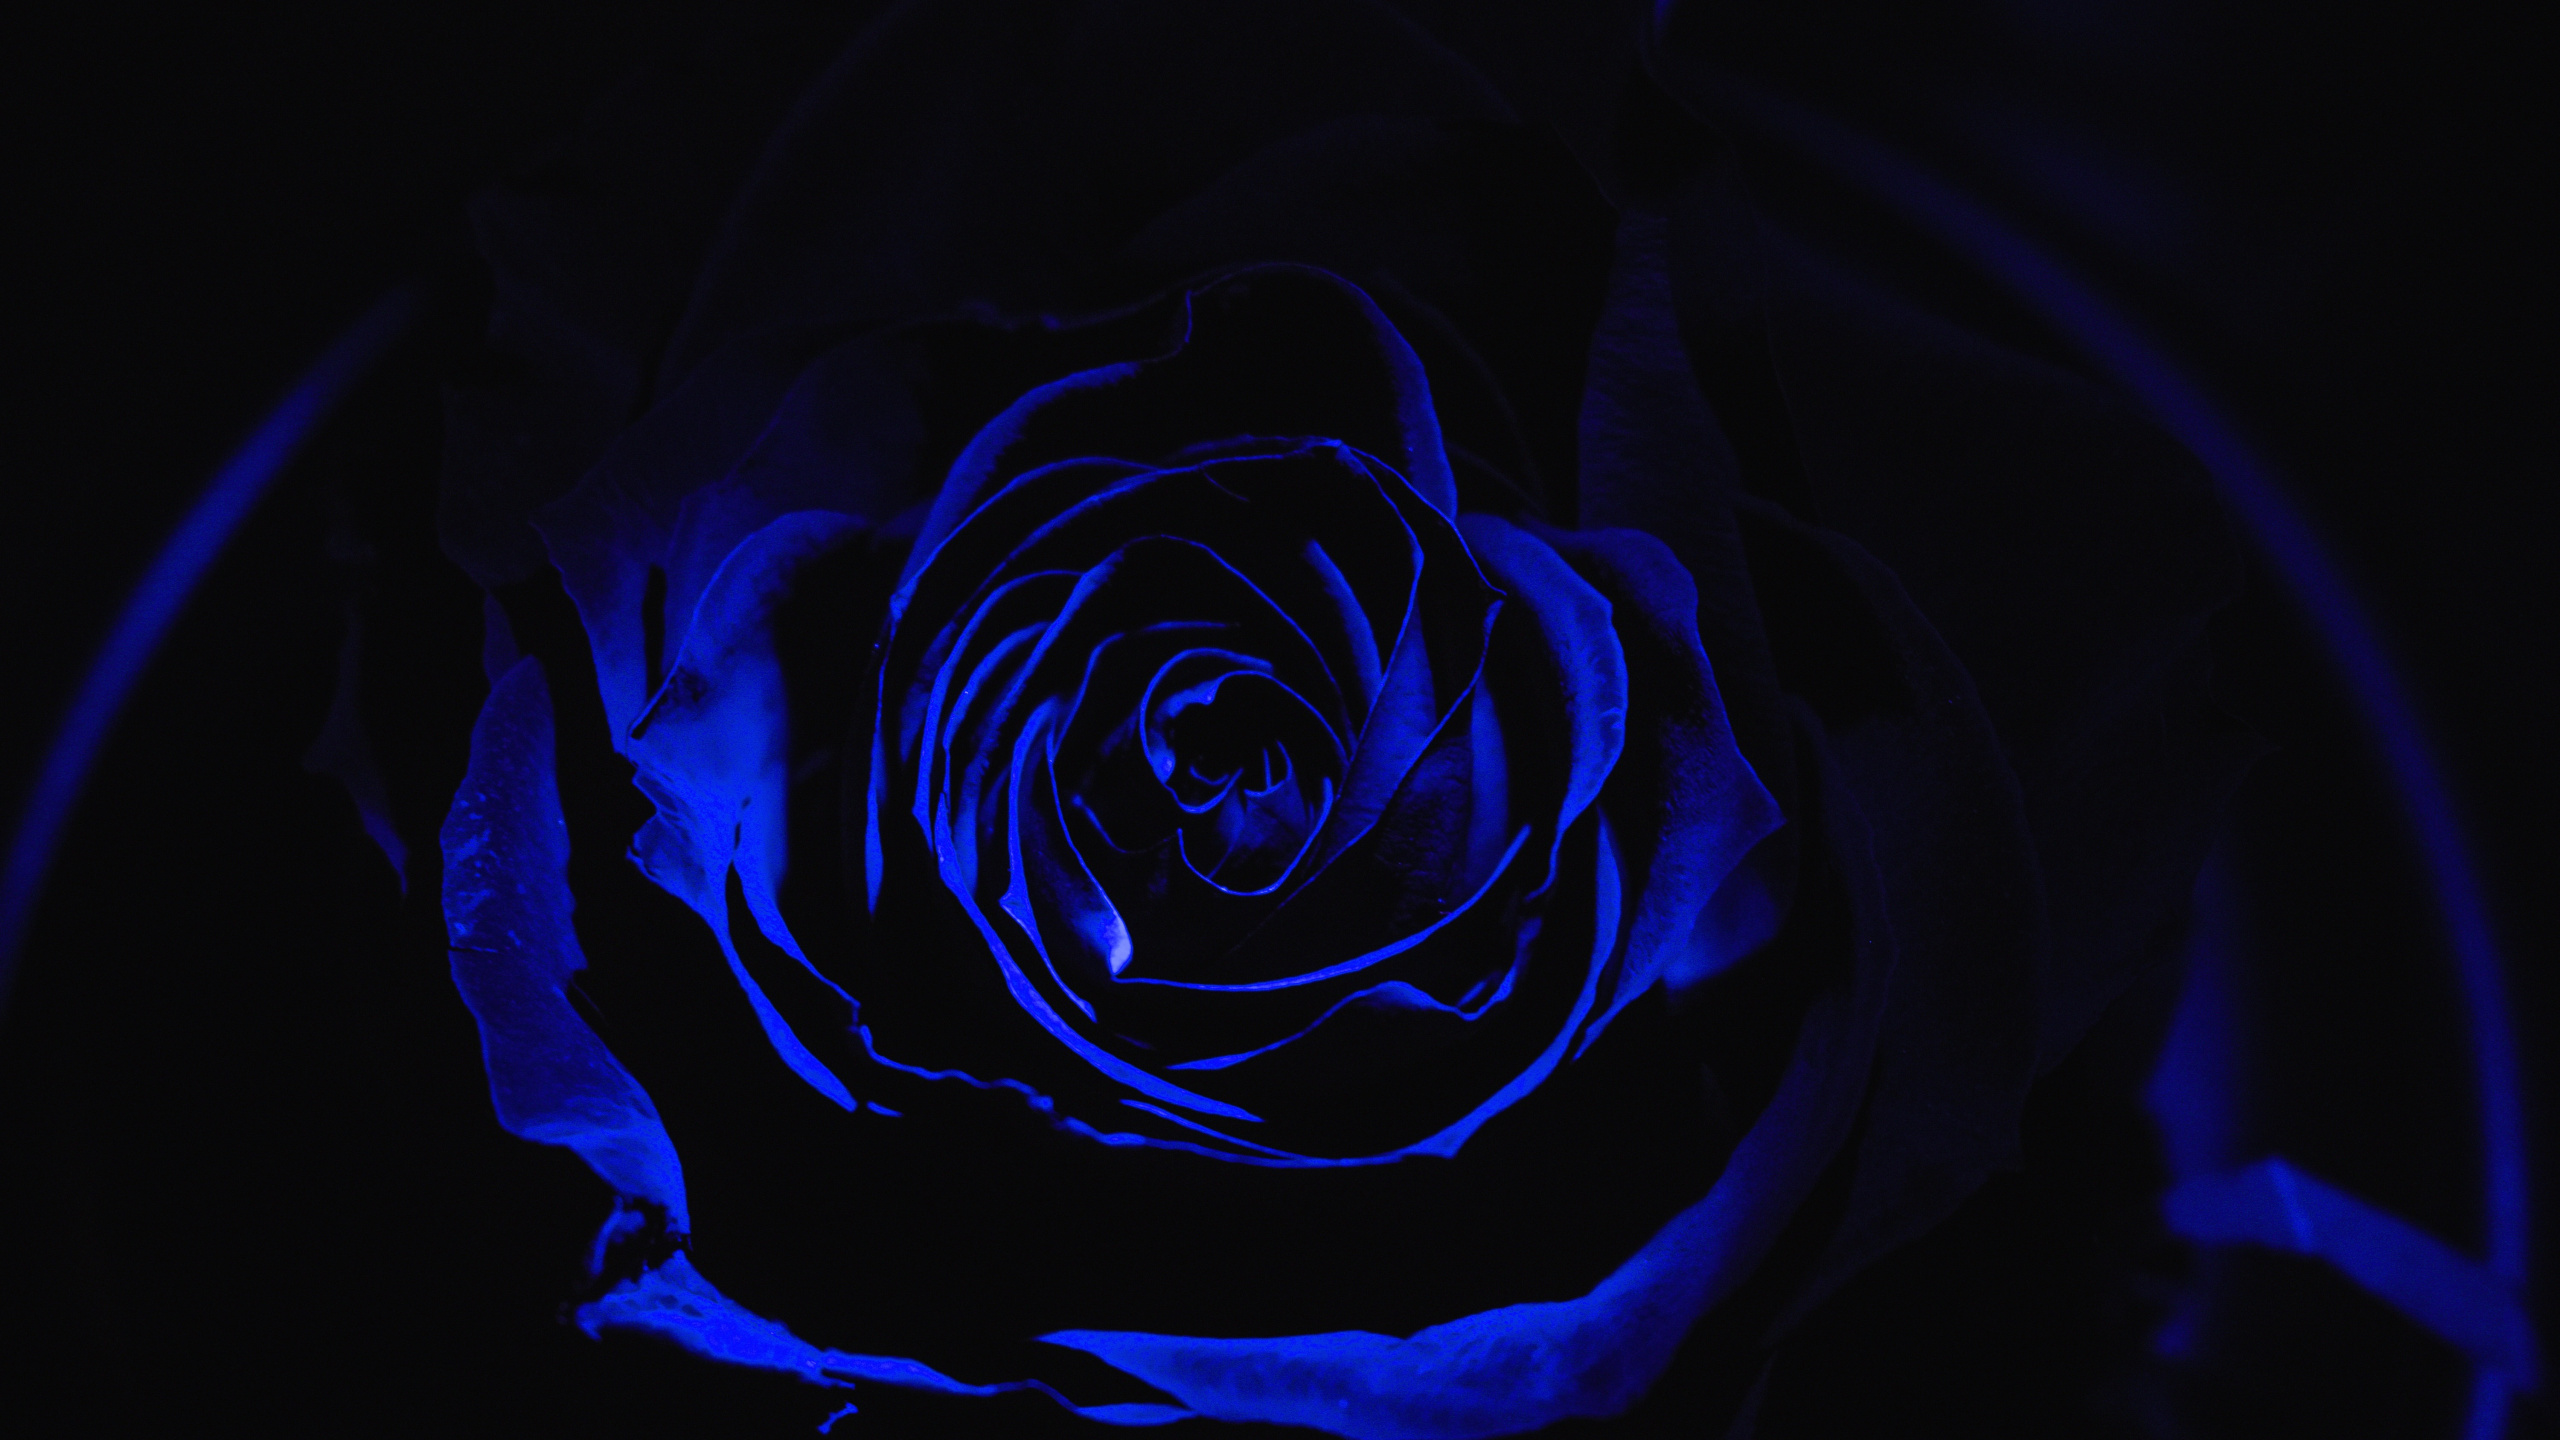 黑色的, 玫瑰家庭, 玫瑰花园, 蓝玫瑰, 电蓝色的 壁纸 2560x1440 允许